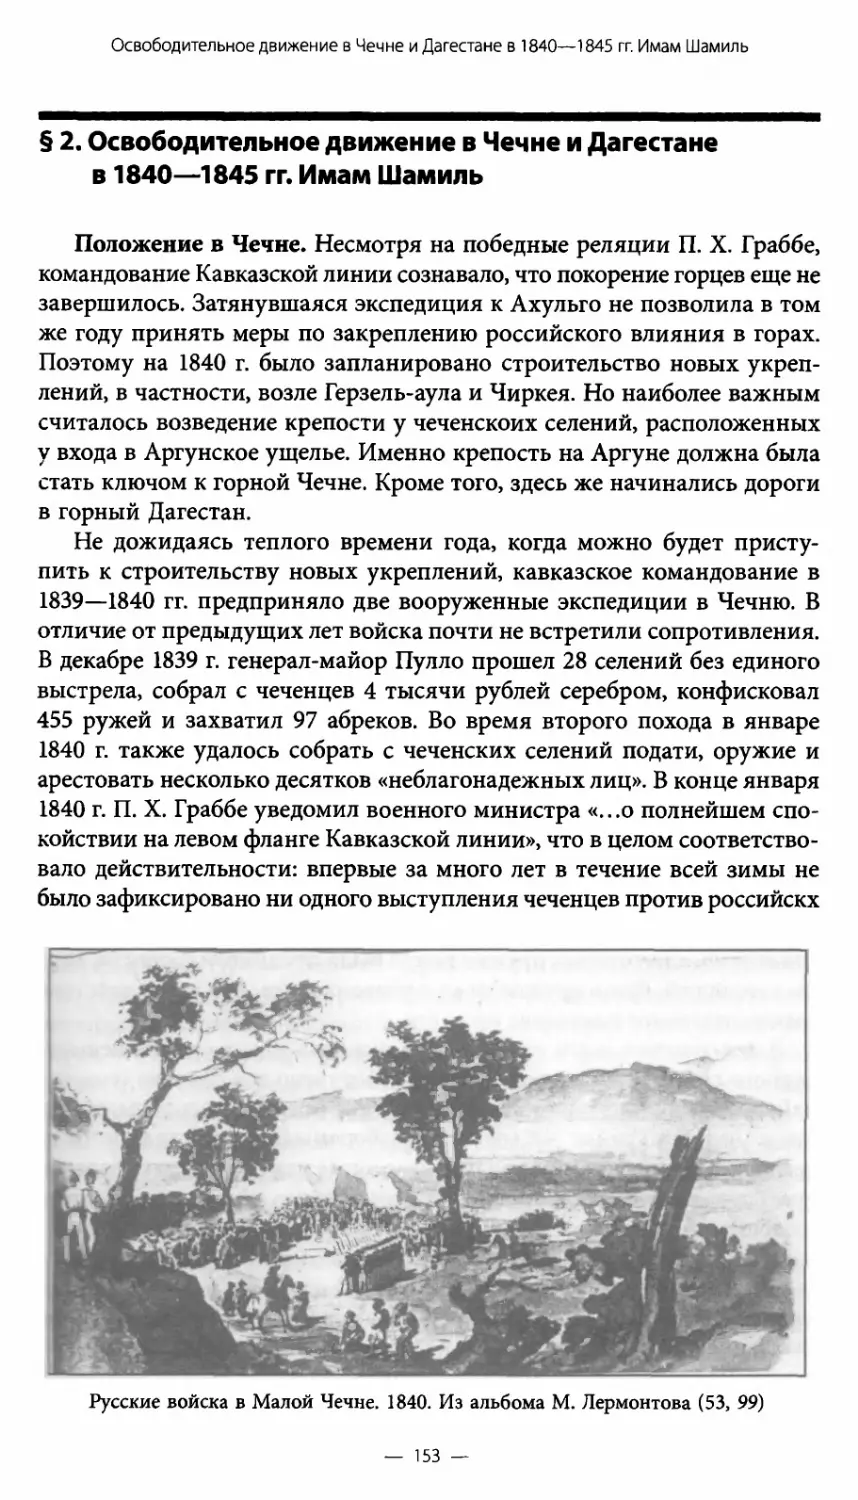 § 2. Освободительное движение в Чечне и Дагестане в 1840—1845 гг. Имам Шамиль